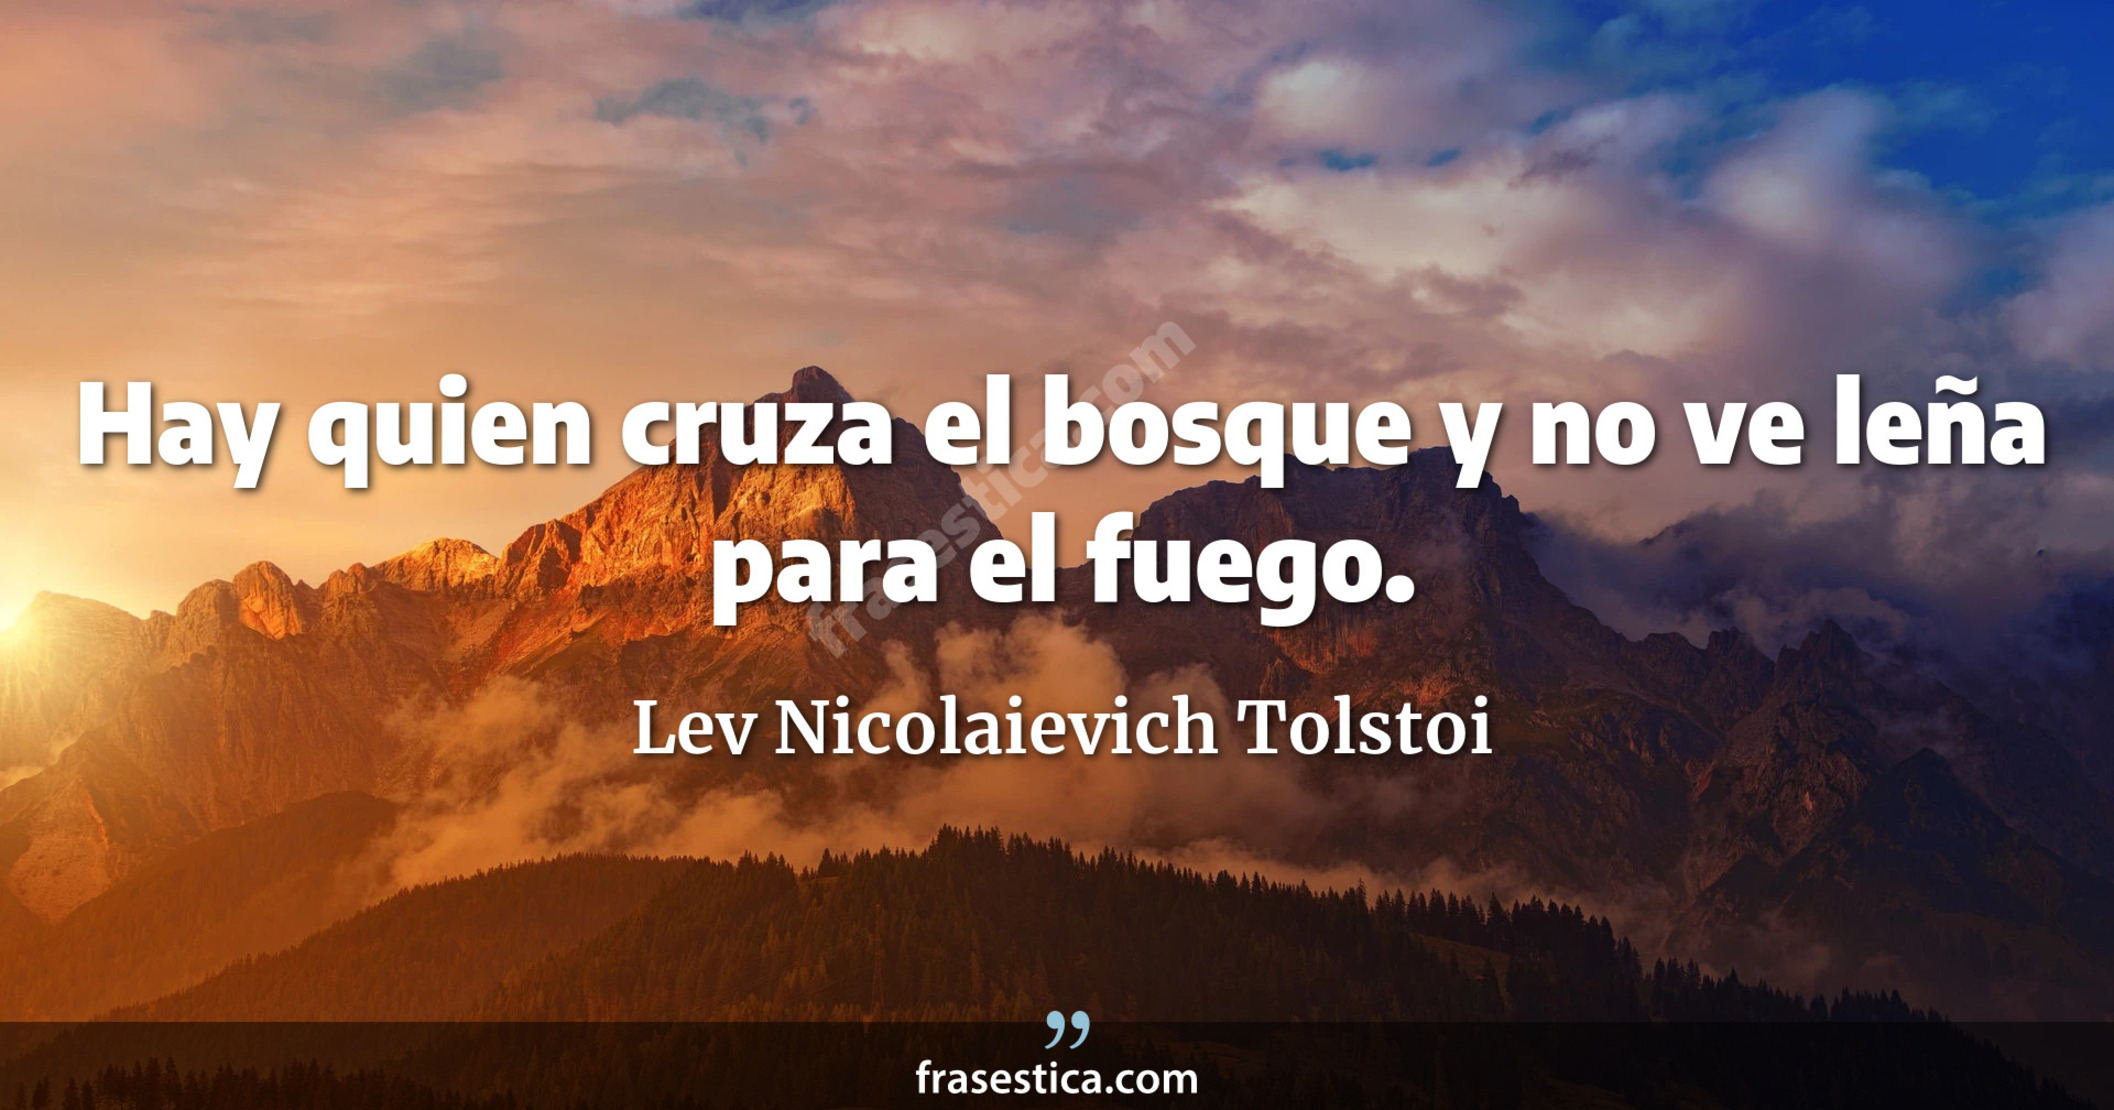 Hay quien cruza el bosque y no ve leña para el fuego. - Lev Nicolaievich Tolstoi